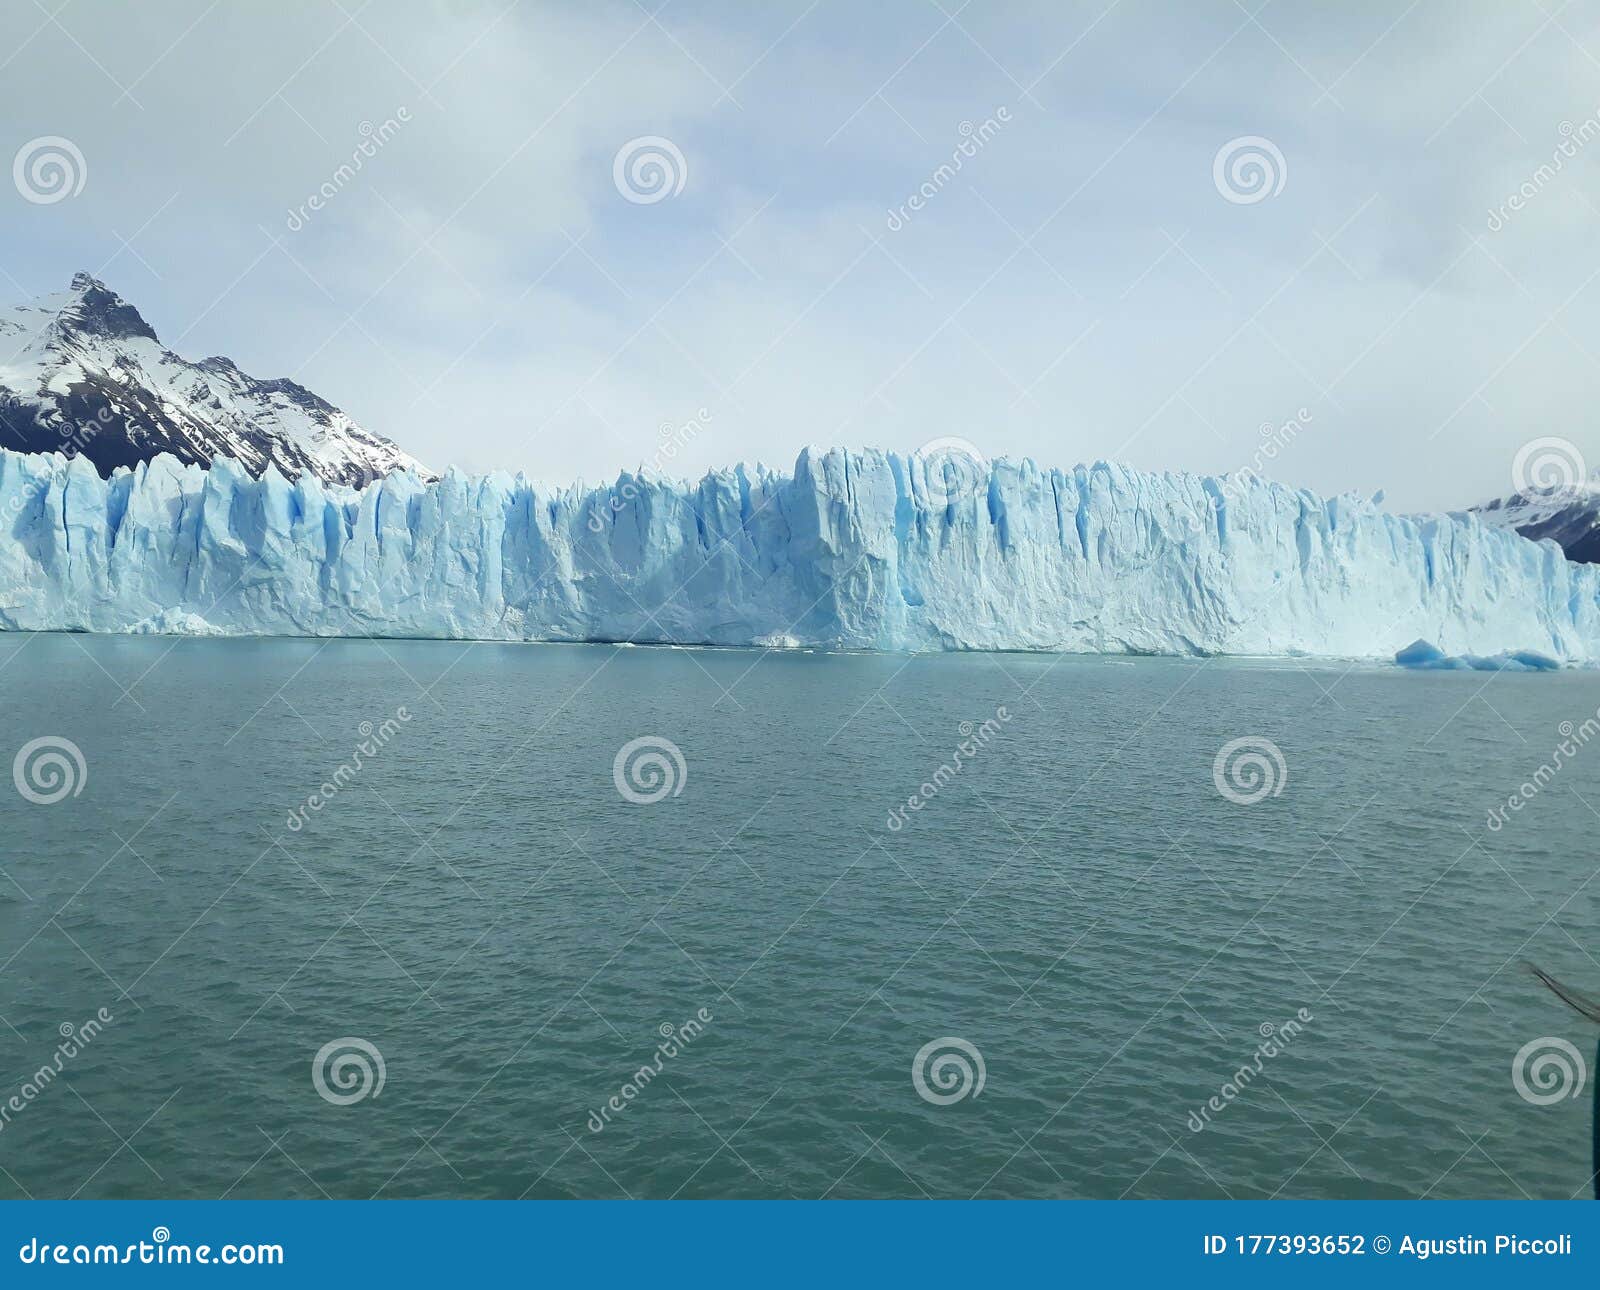 argentina, south, glacier, perito moreno